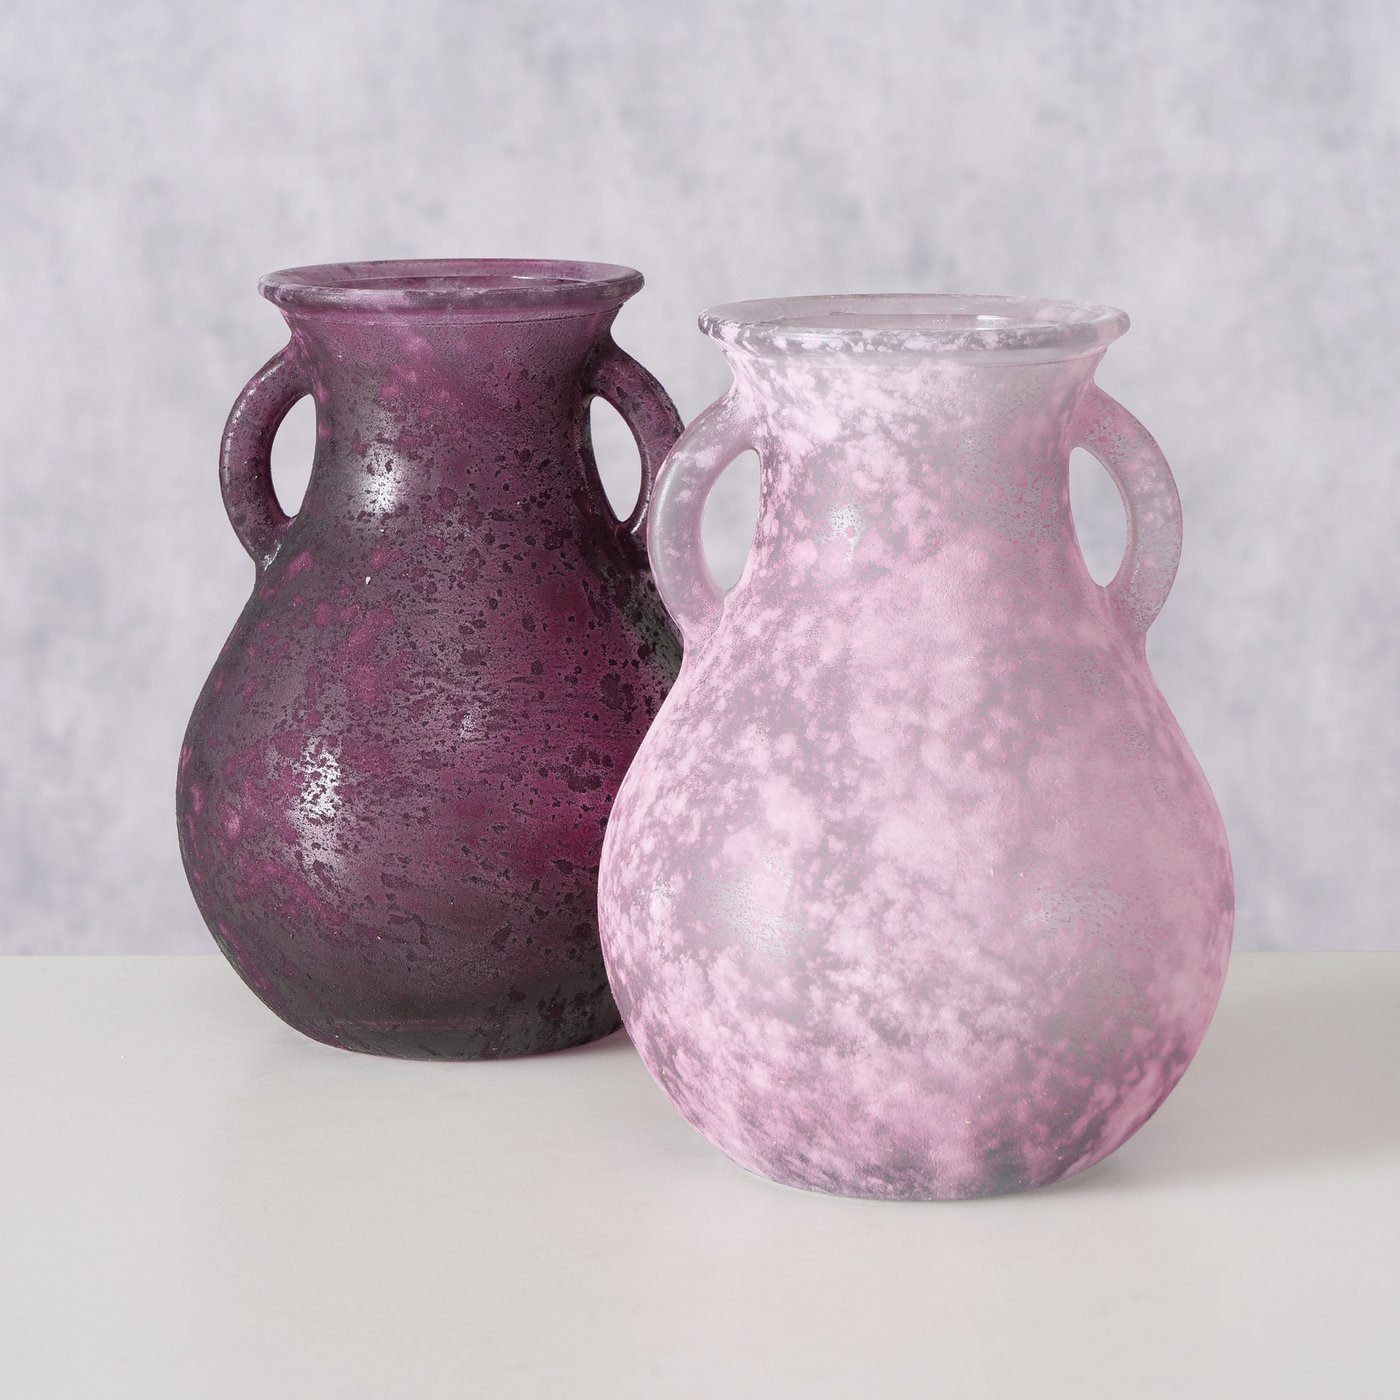 BOLTZE Dekovase 2er Set "Pitcher" aus Glas in lila/rosa, Vase Blumenvase | Dekovasen